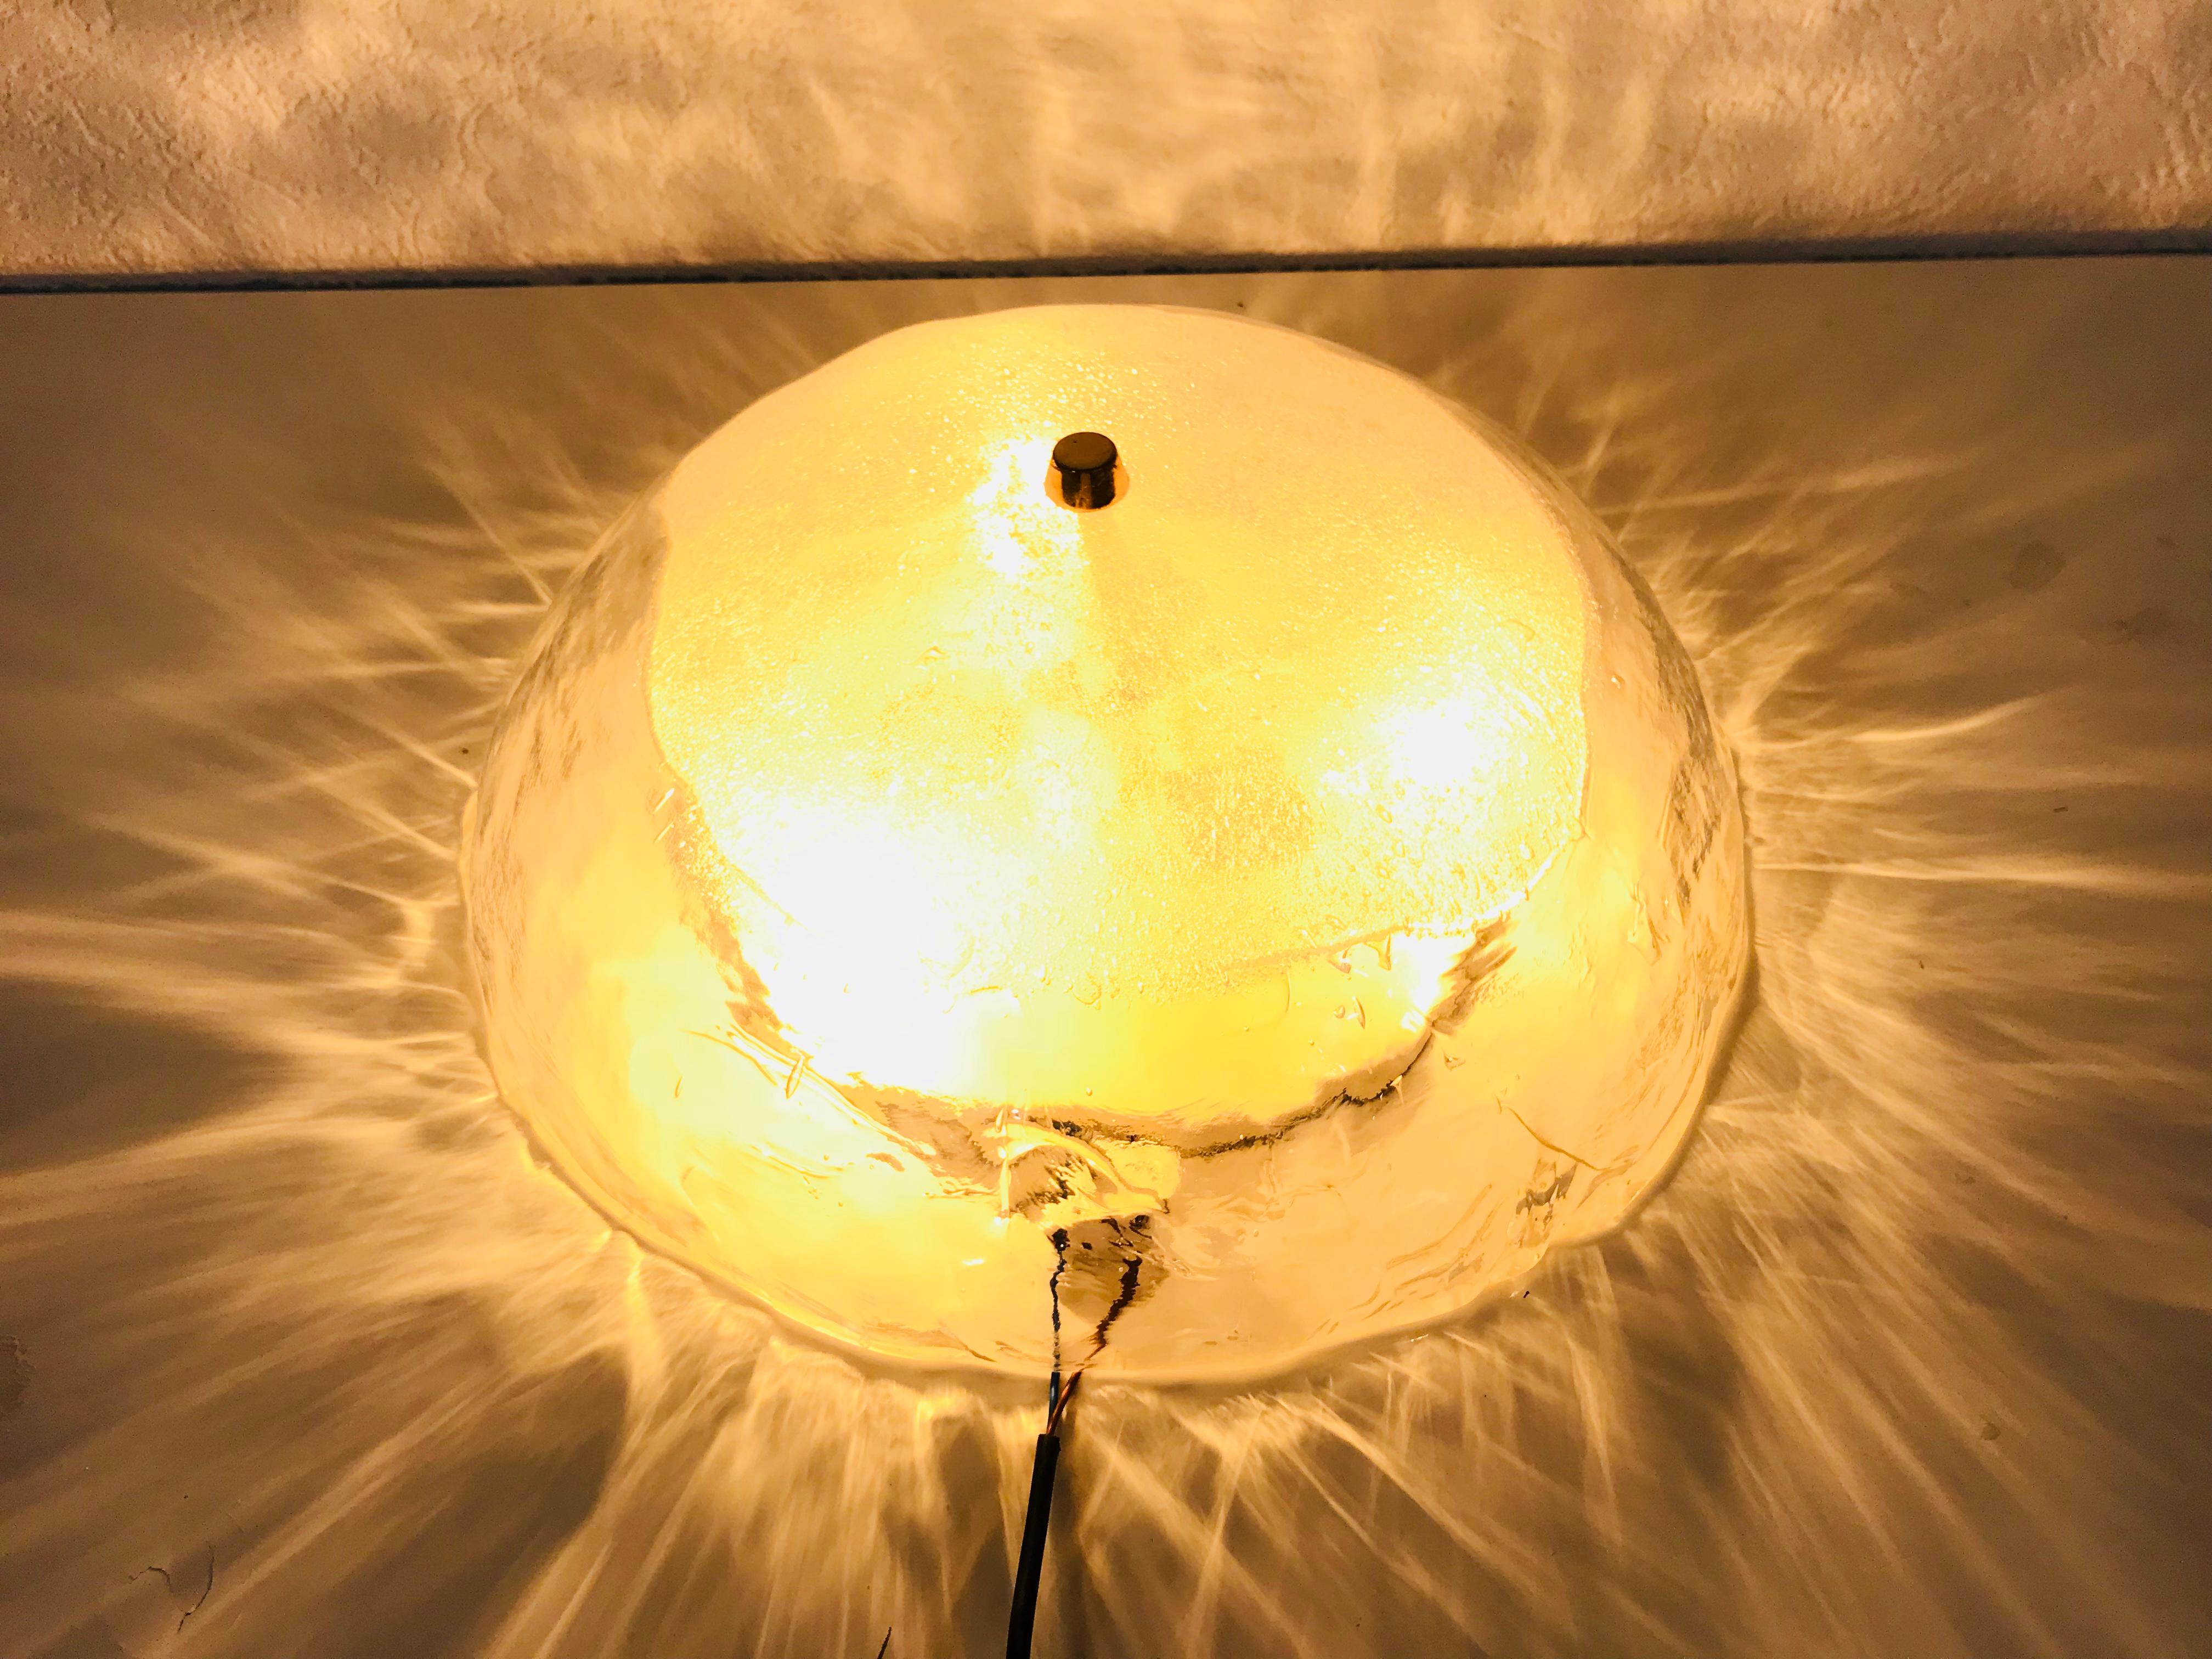 Mid-Century Modern flush mount von der österreichischen Marke in den 1960er Jahren gemacht. Am Eisglas ist eine goldene Messingschraube befestigt. Die Unterseite der Lampe ist grün gefärbt.

Die Leuchte benötigt drei E27-Glühbirnen.